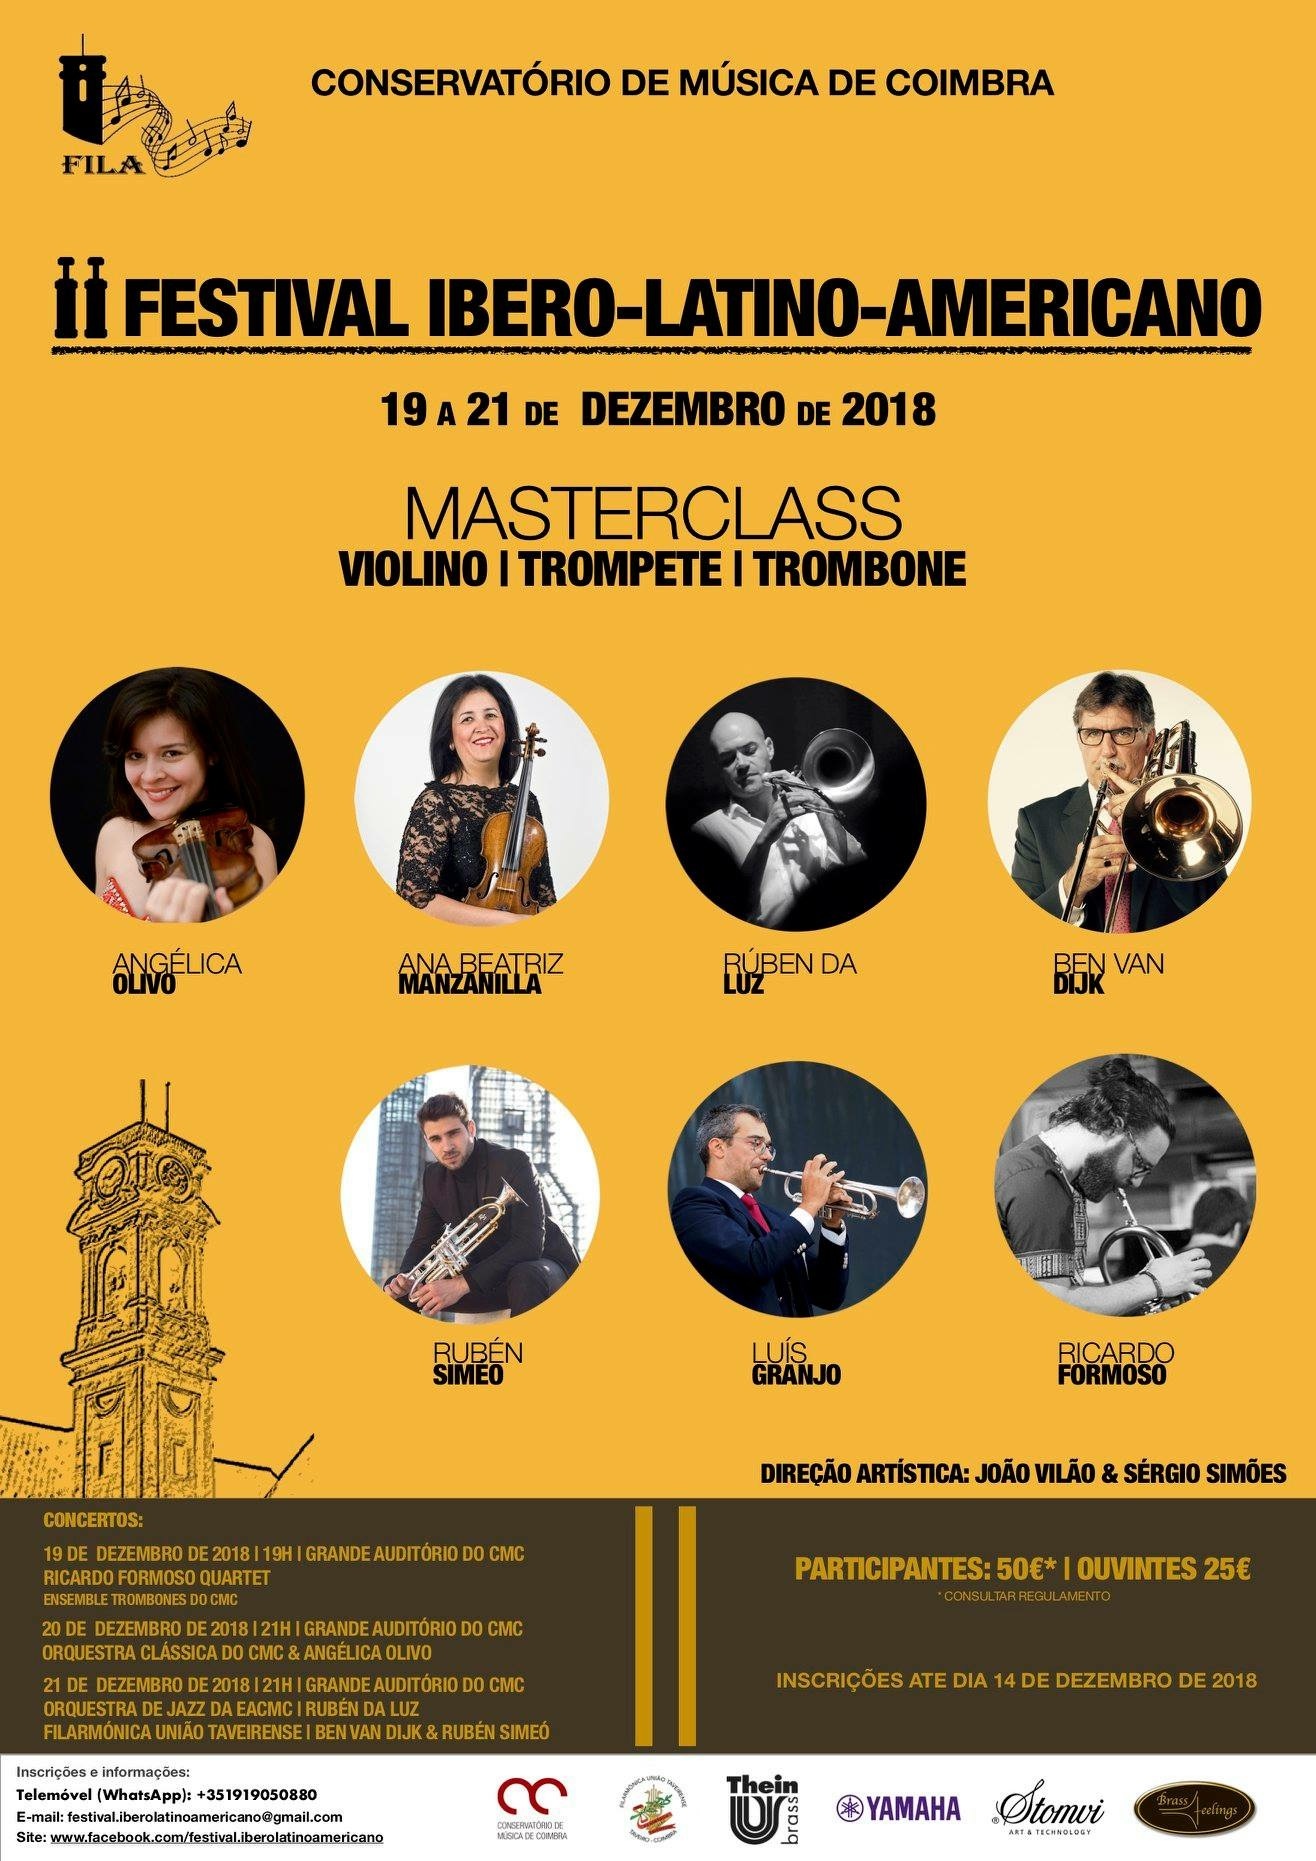 Masterclasse de violino no Festival Ibero-Latino-Americano